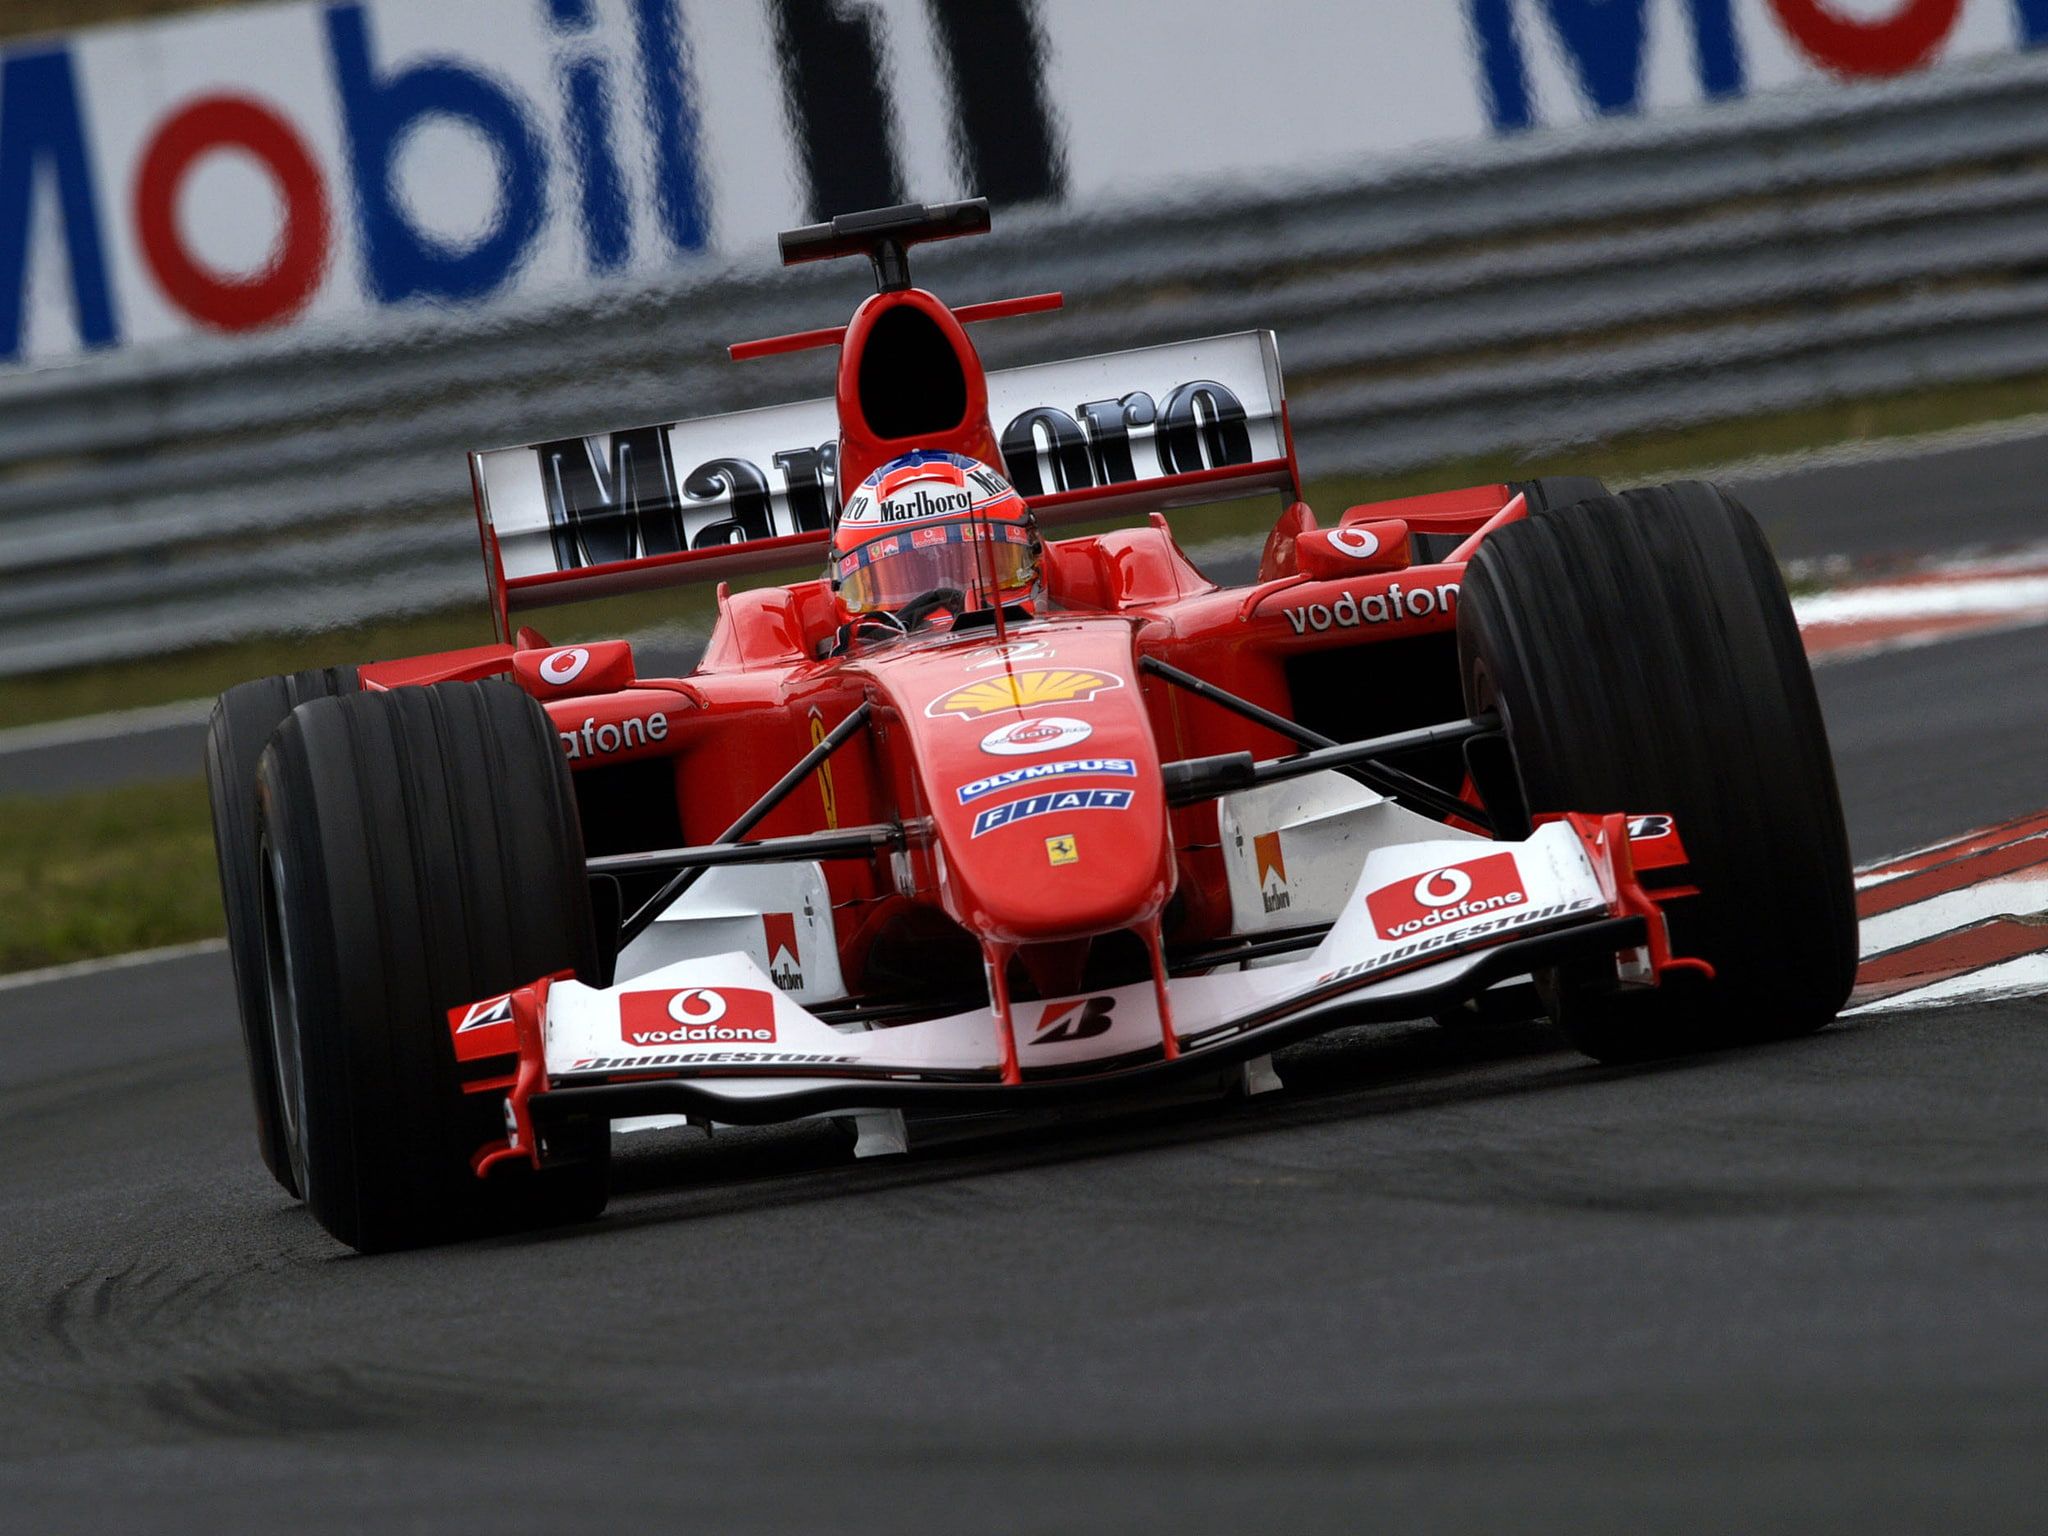 f 1 #f2004 #ferrari #formula #race #racing P #wallpaper #hdwallpaper #desktop. Ferrari, Ferrari f Courses